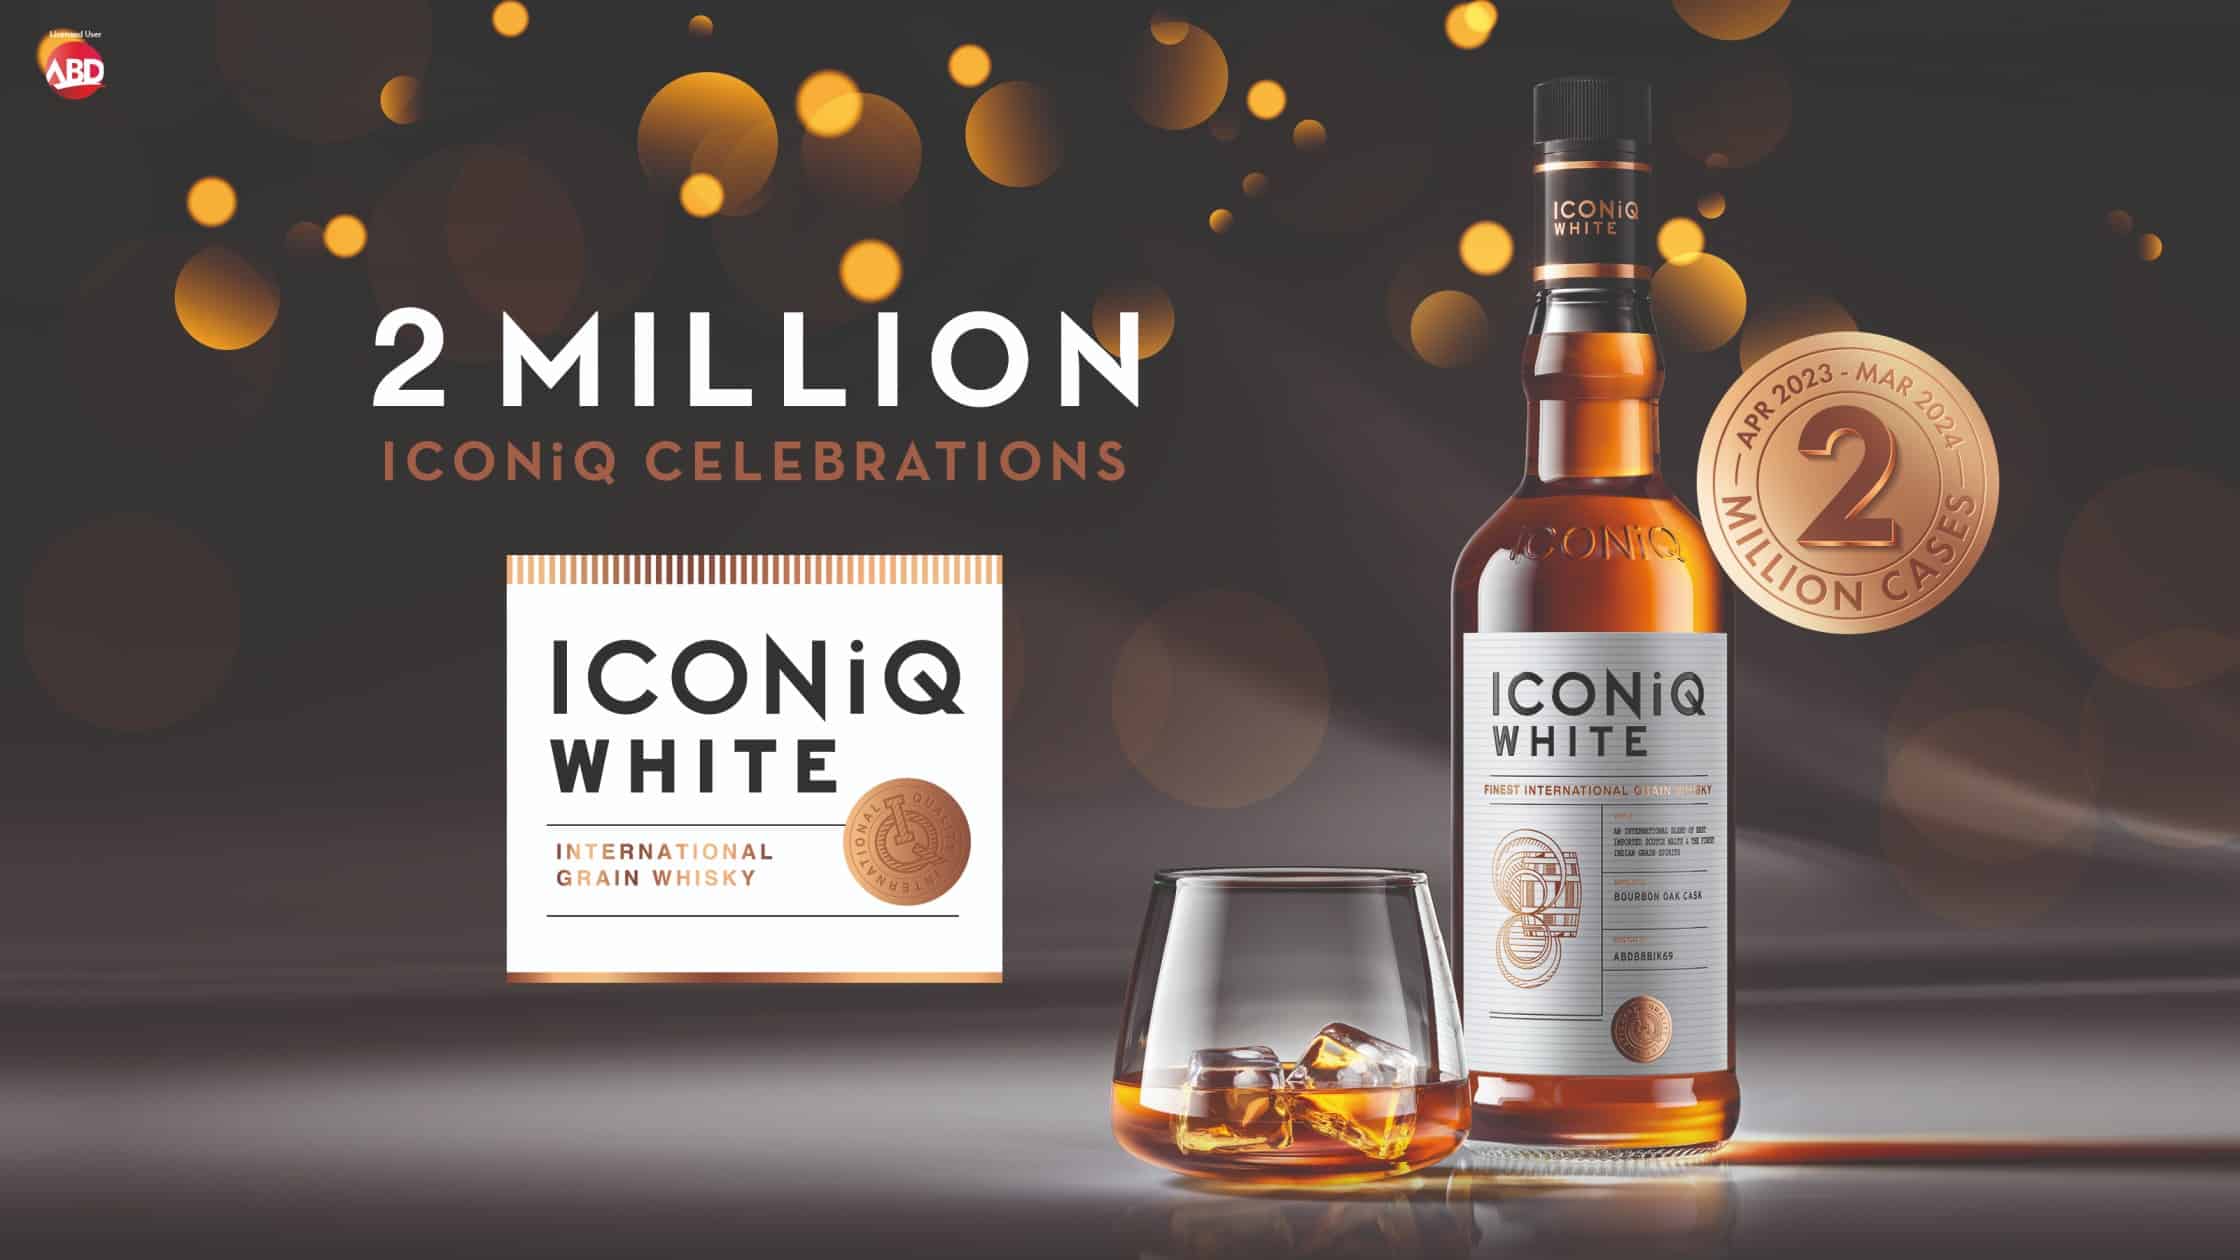 ICONiQ White 2 million cases